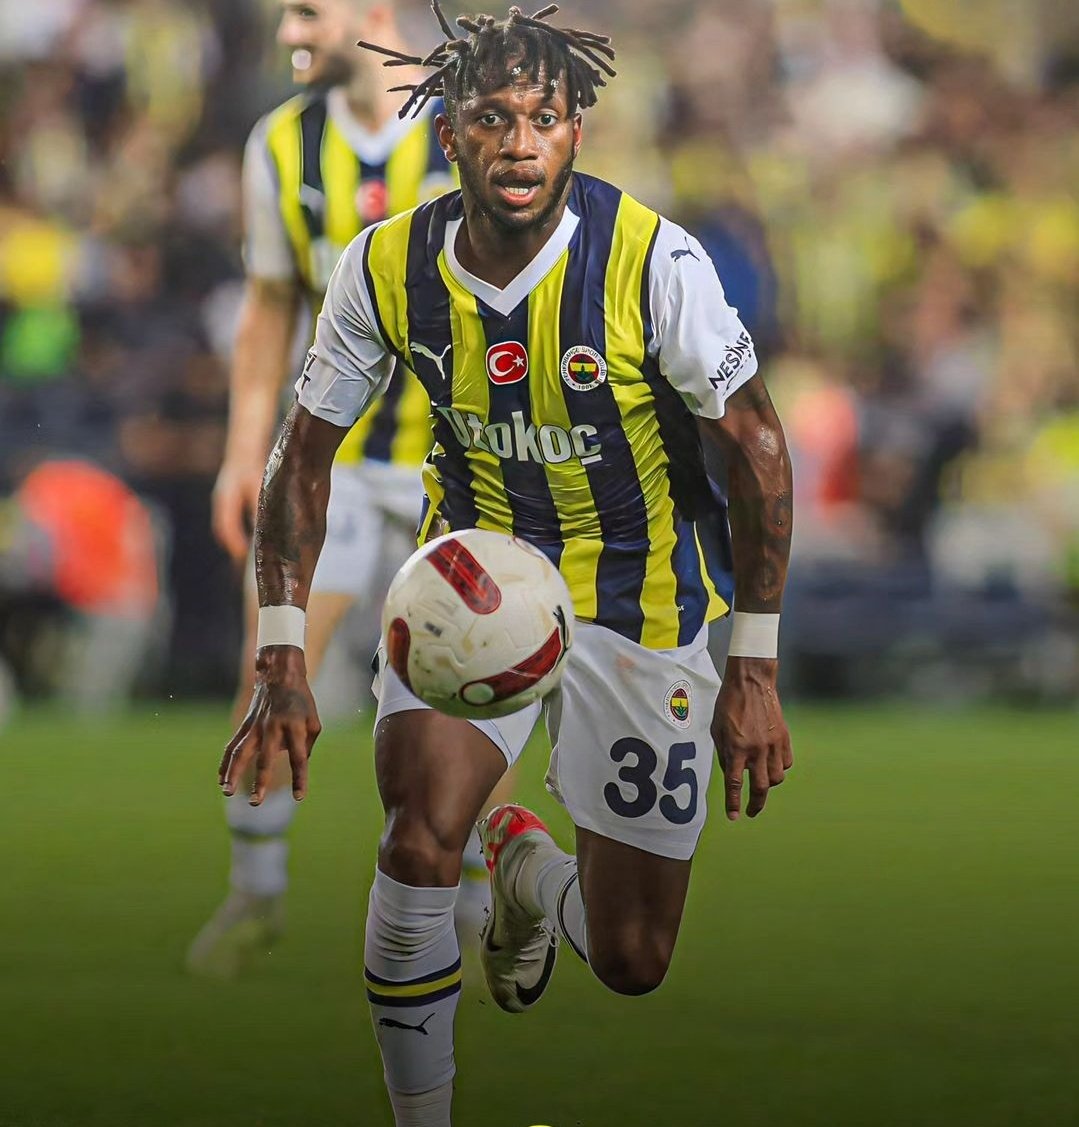 Olan var olmayan var maşallah demeden gecmeyin

Fred Çakmaktaş 💛💙

#KASvFB
Kasımpaşa-Fenerbahçe